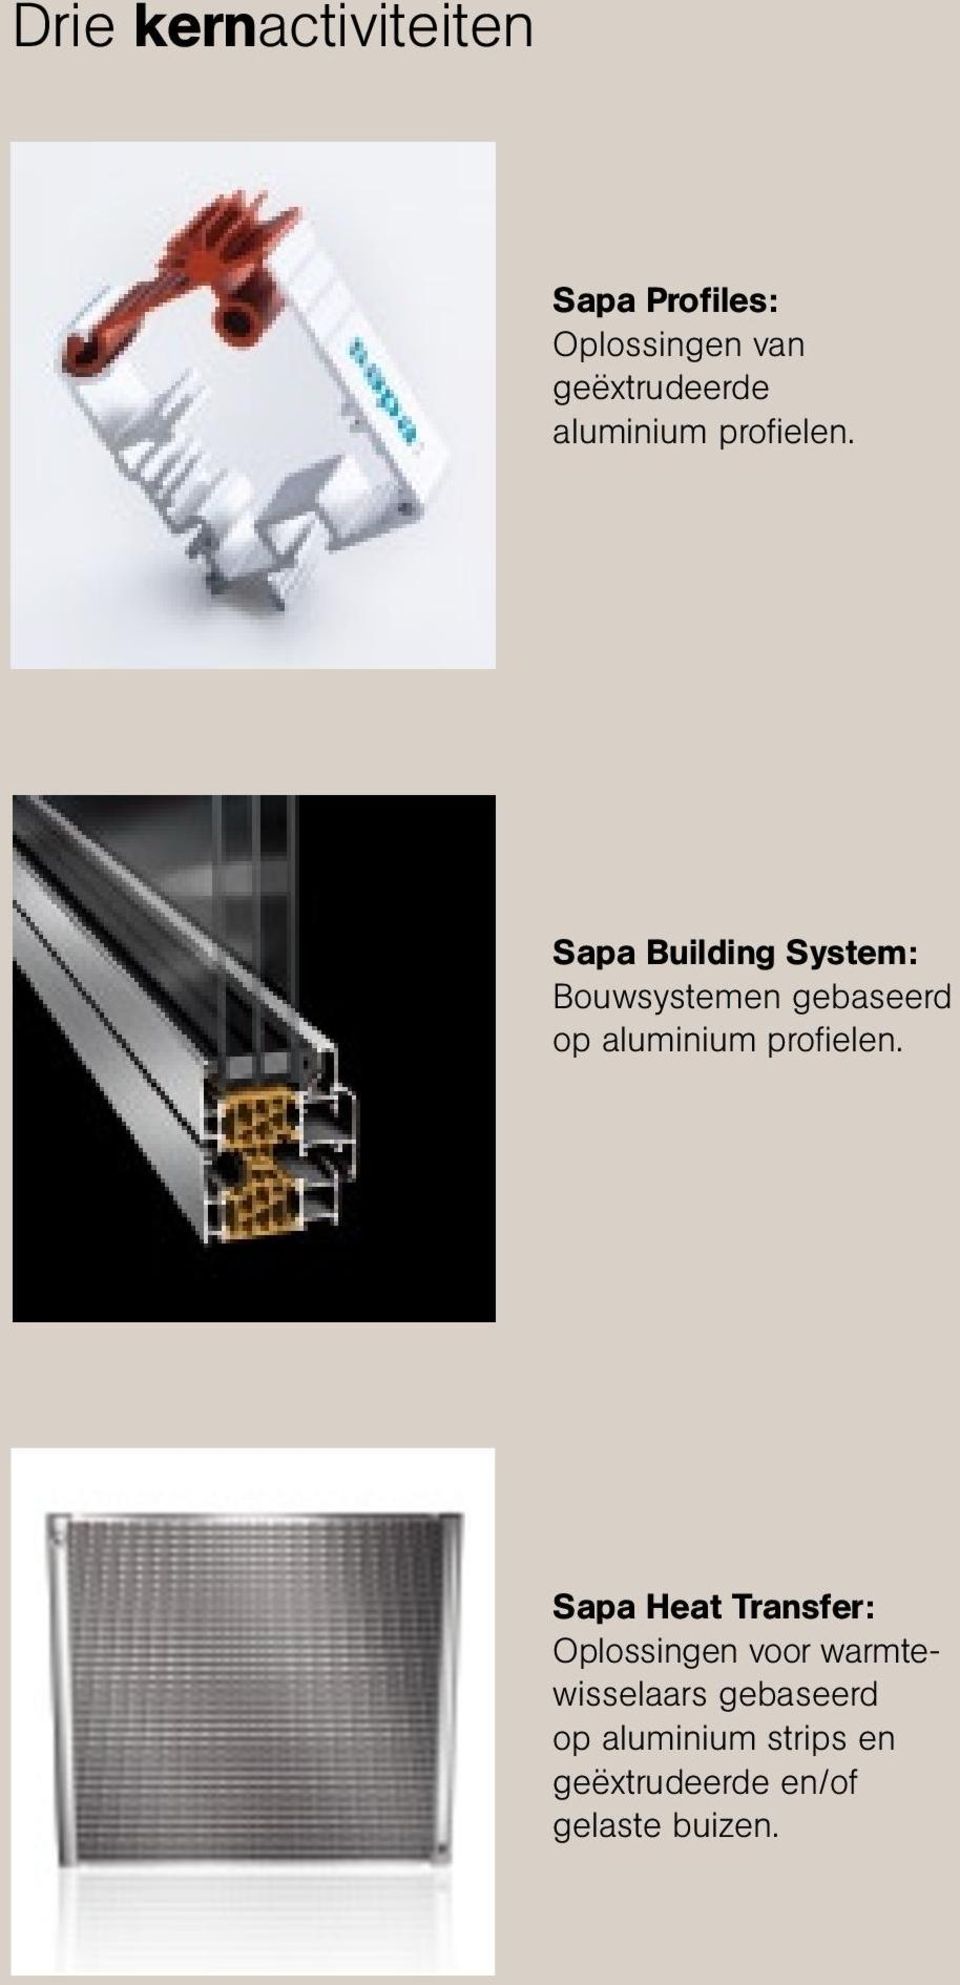 Sapa Building System: Bouwsystemen gebaseerd op  Sapa Heat Transfer: